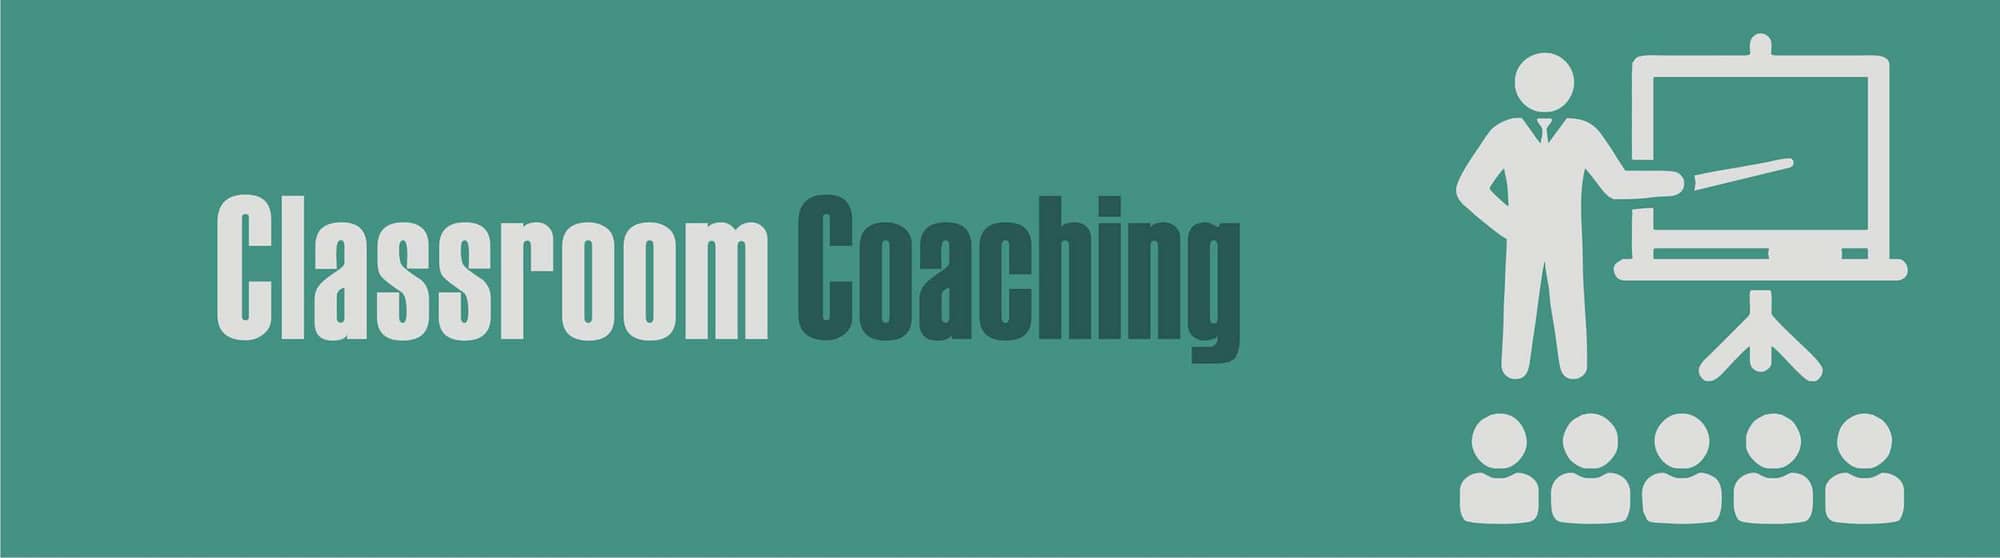 classroom coaching